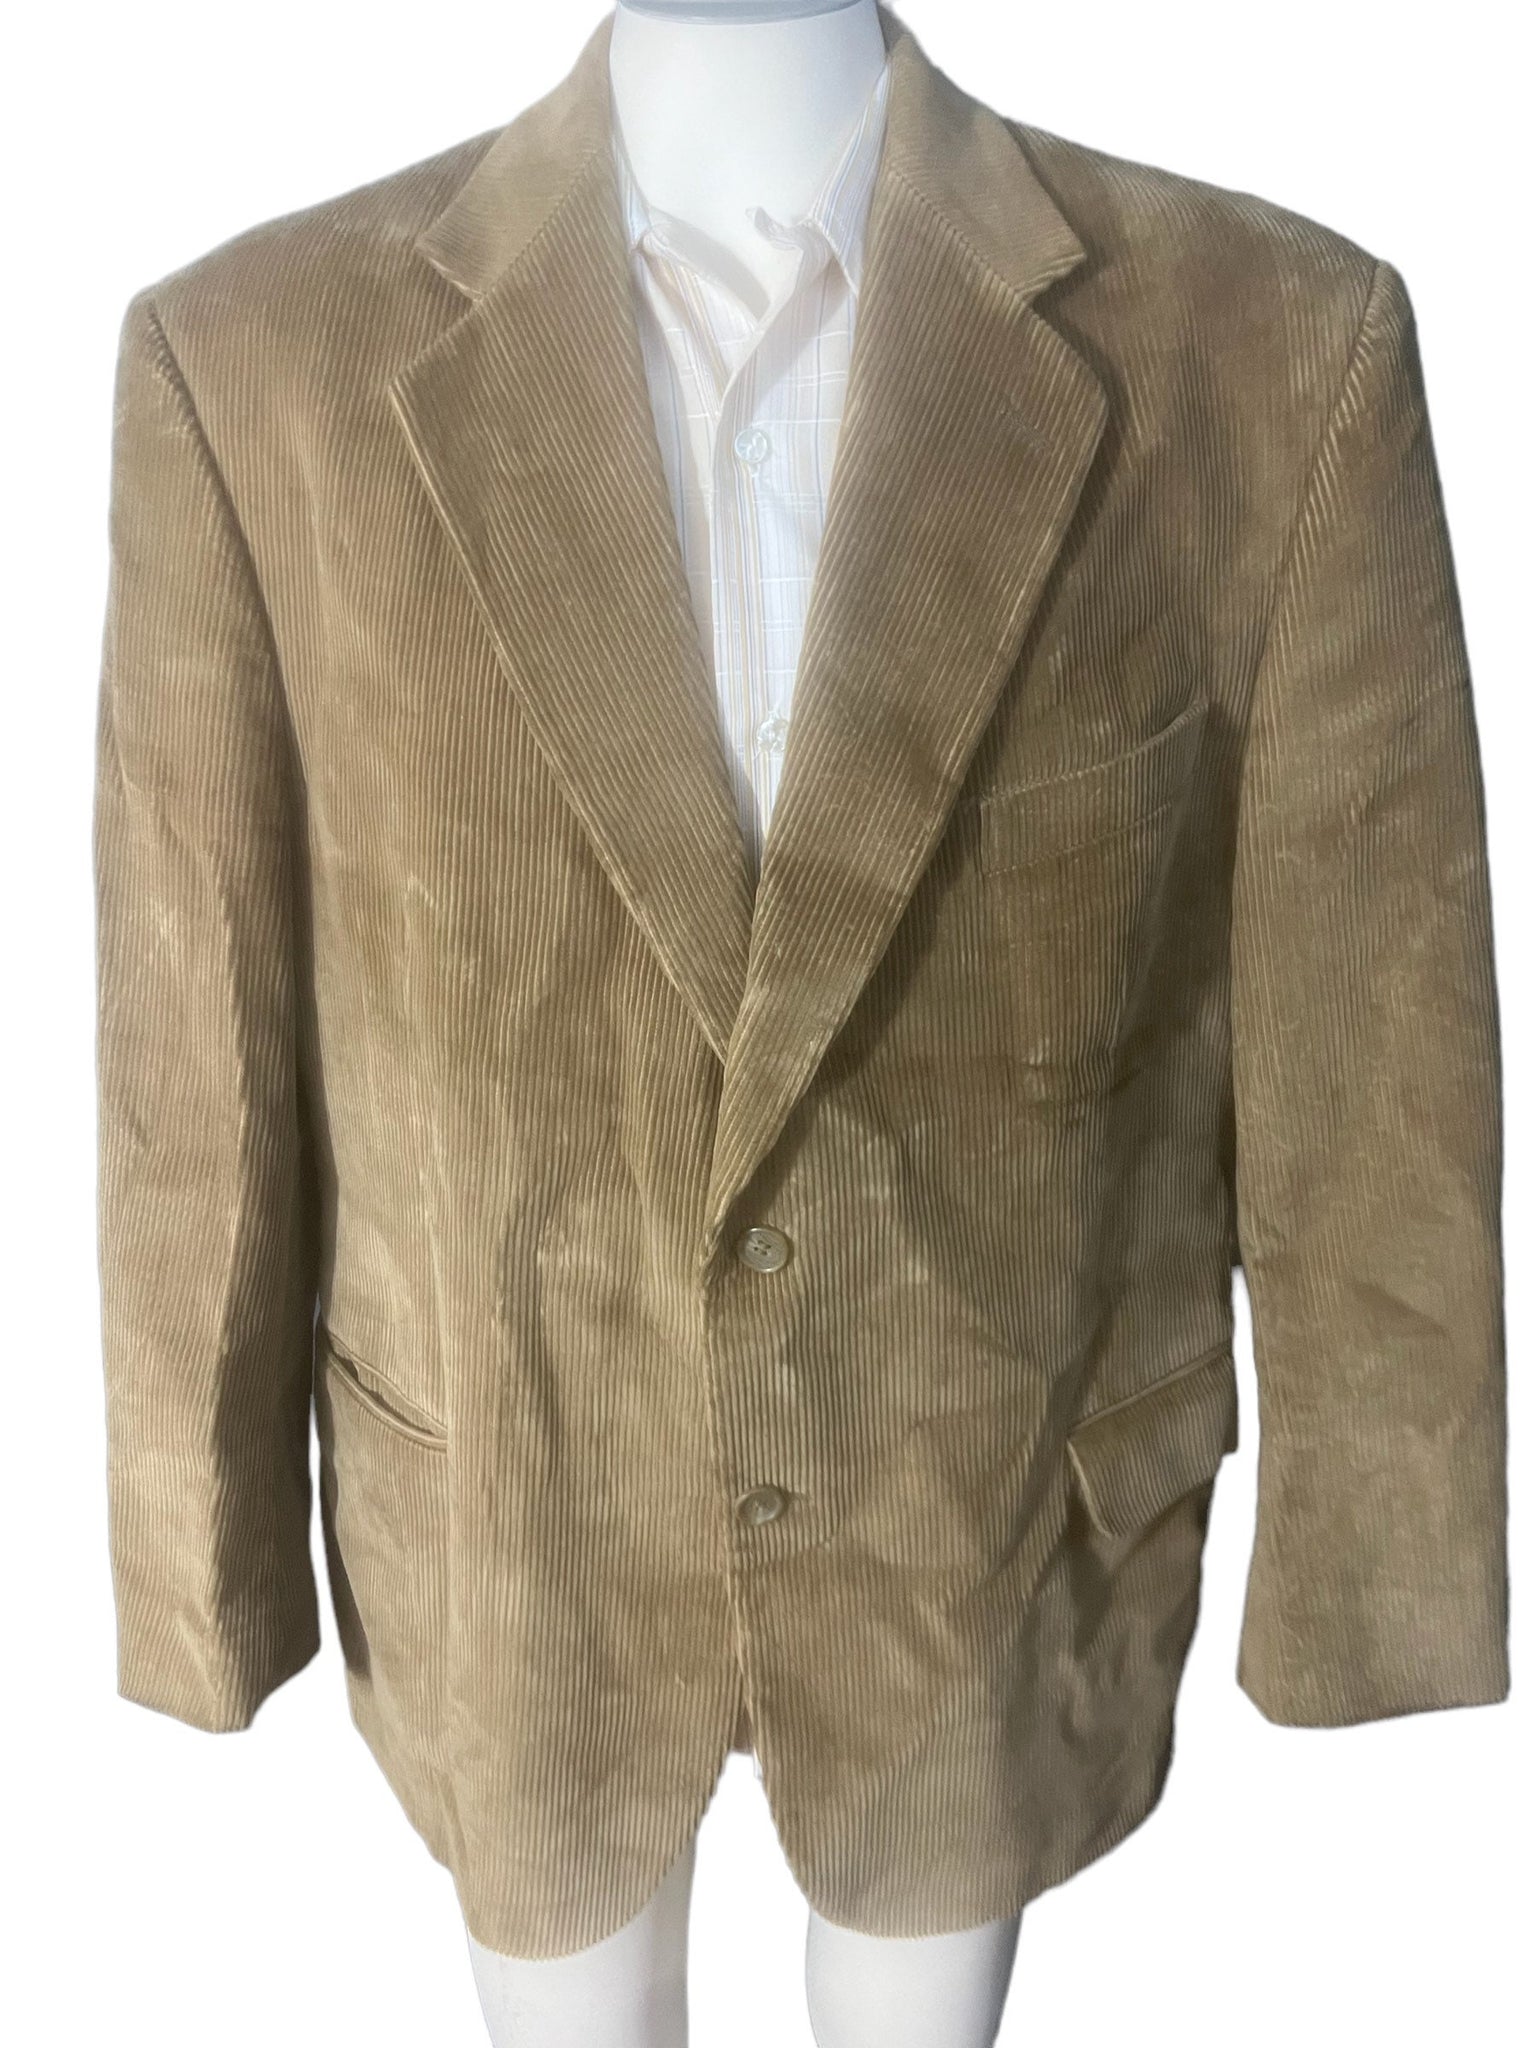 Vintage brown corduroy suit jacket 44R Hunt Valley